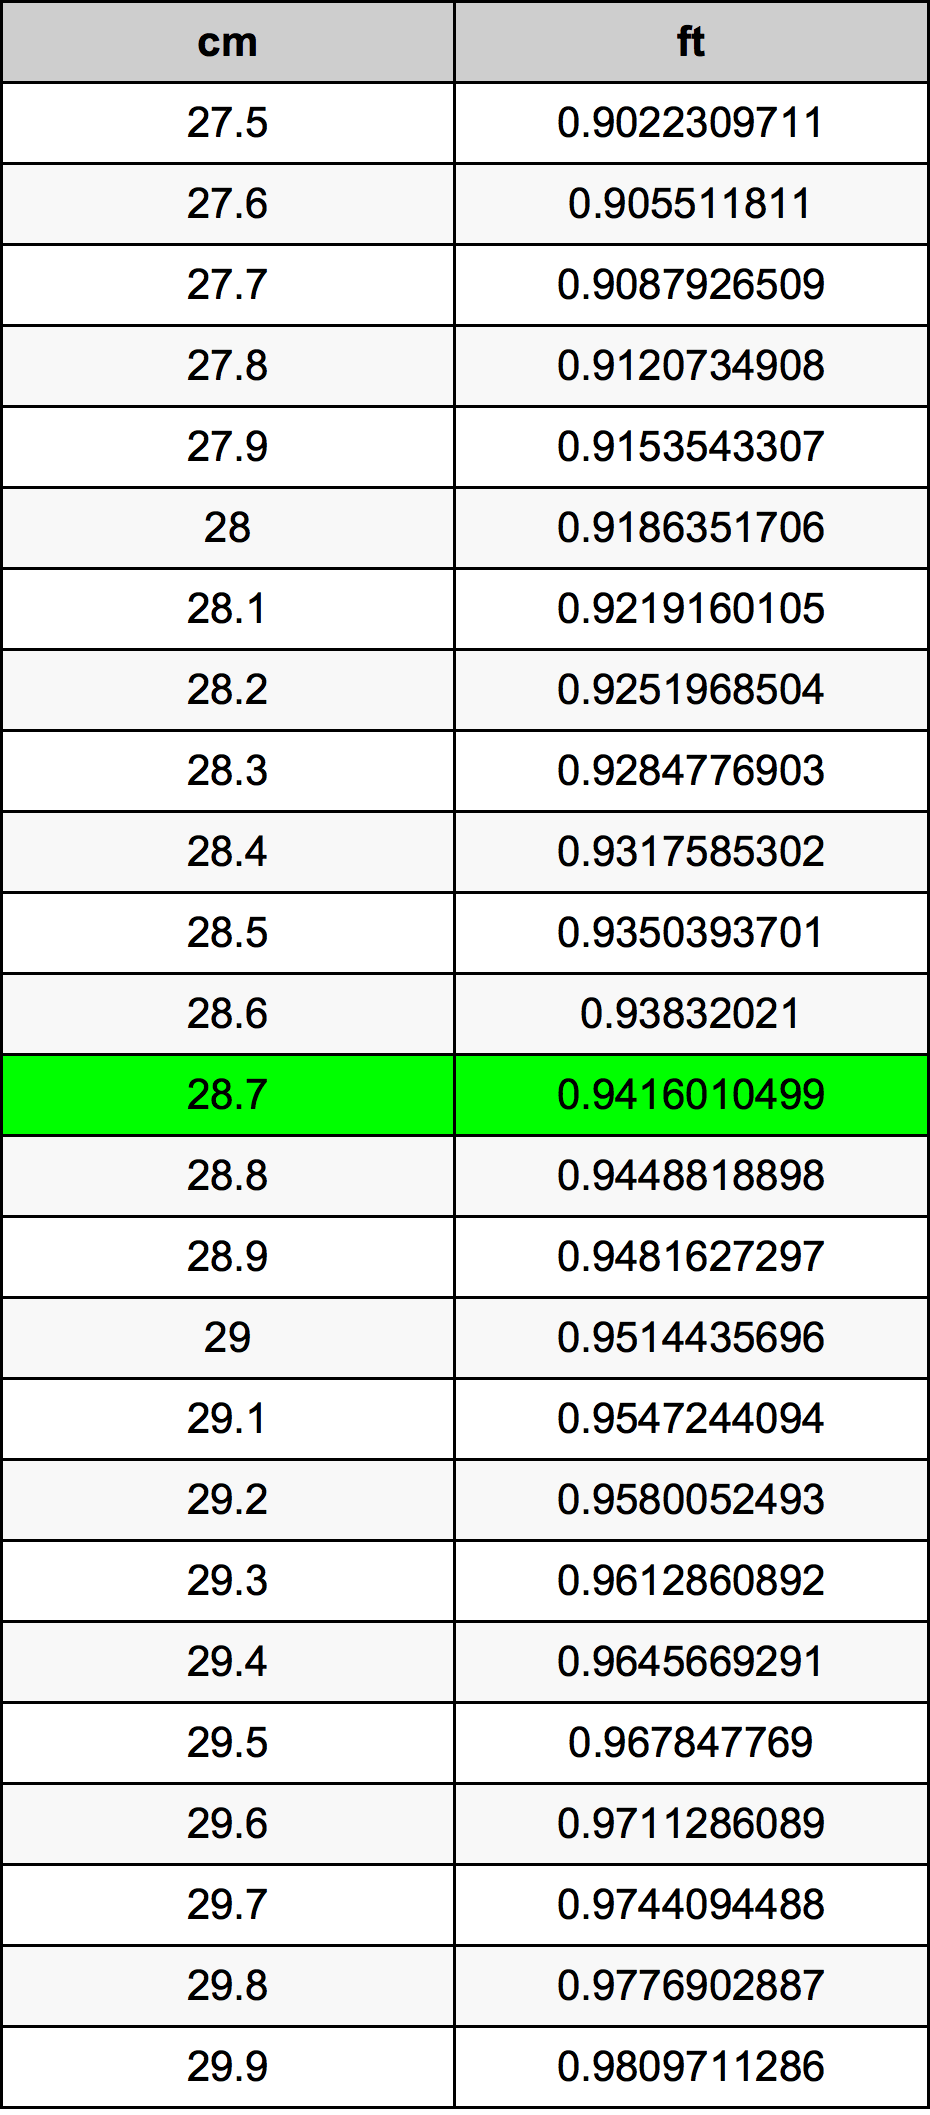 28.7 Centiméter átszámítási táblázat